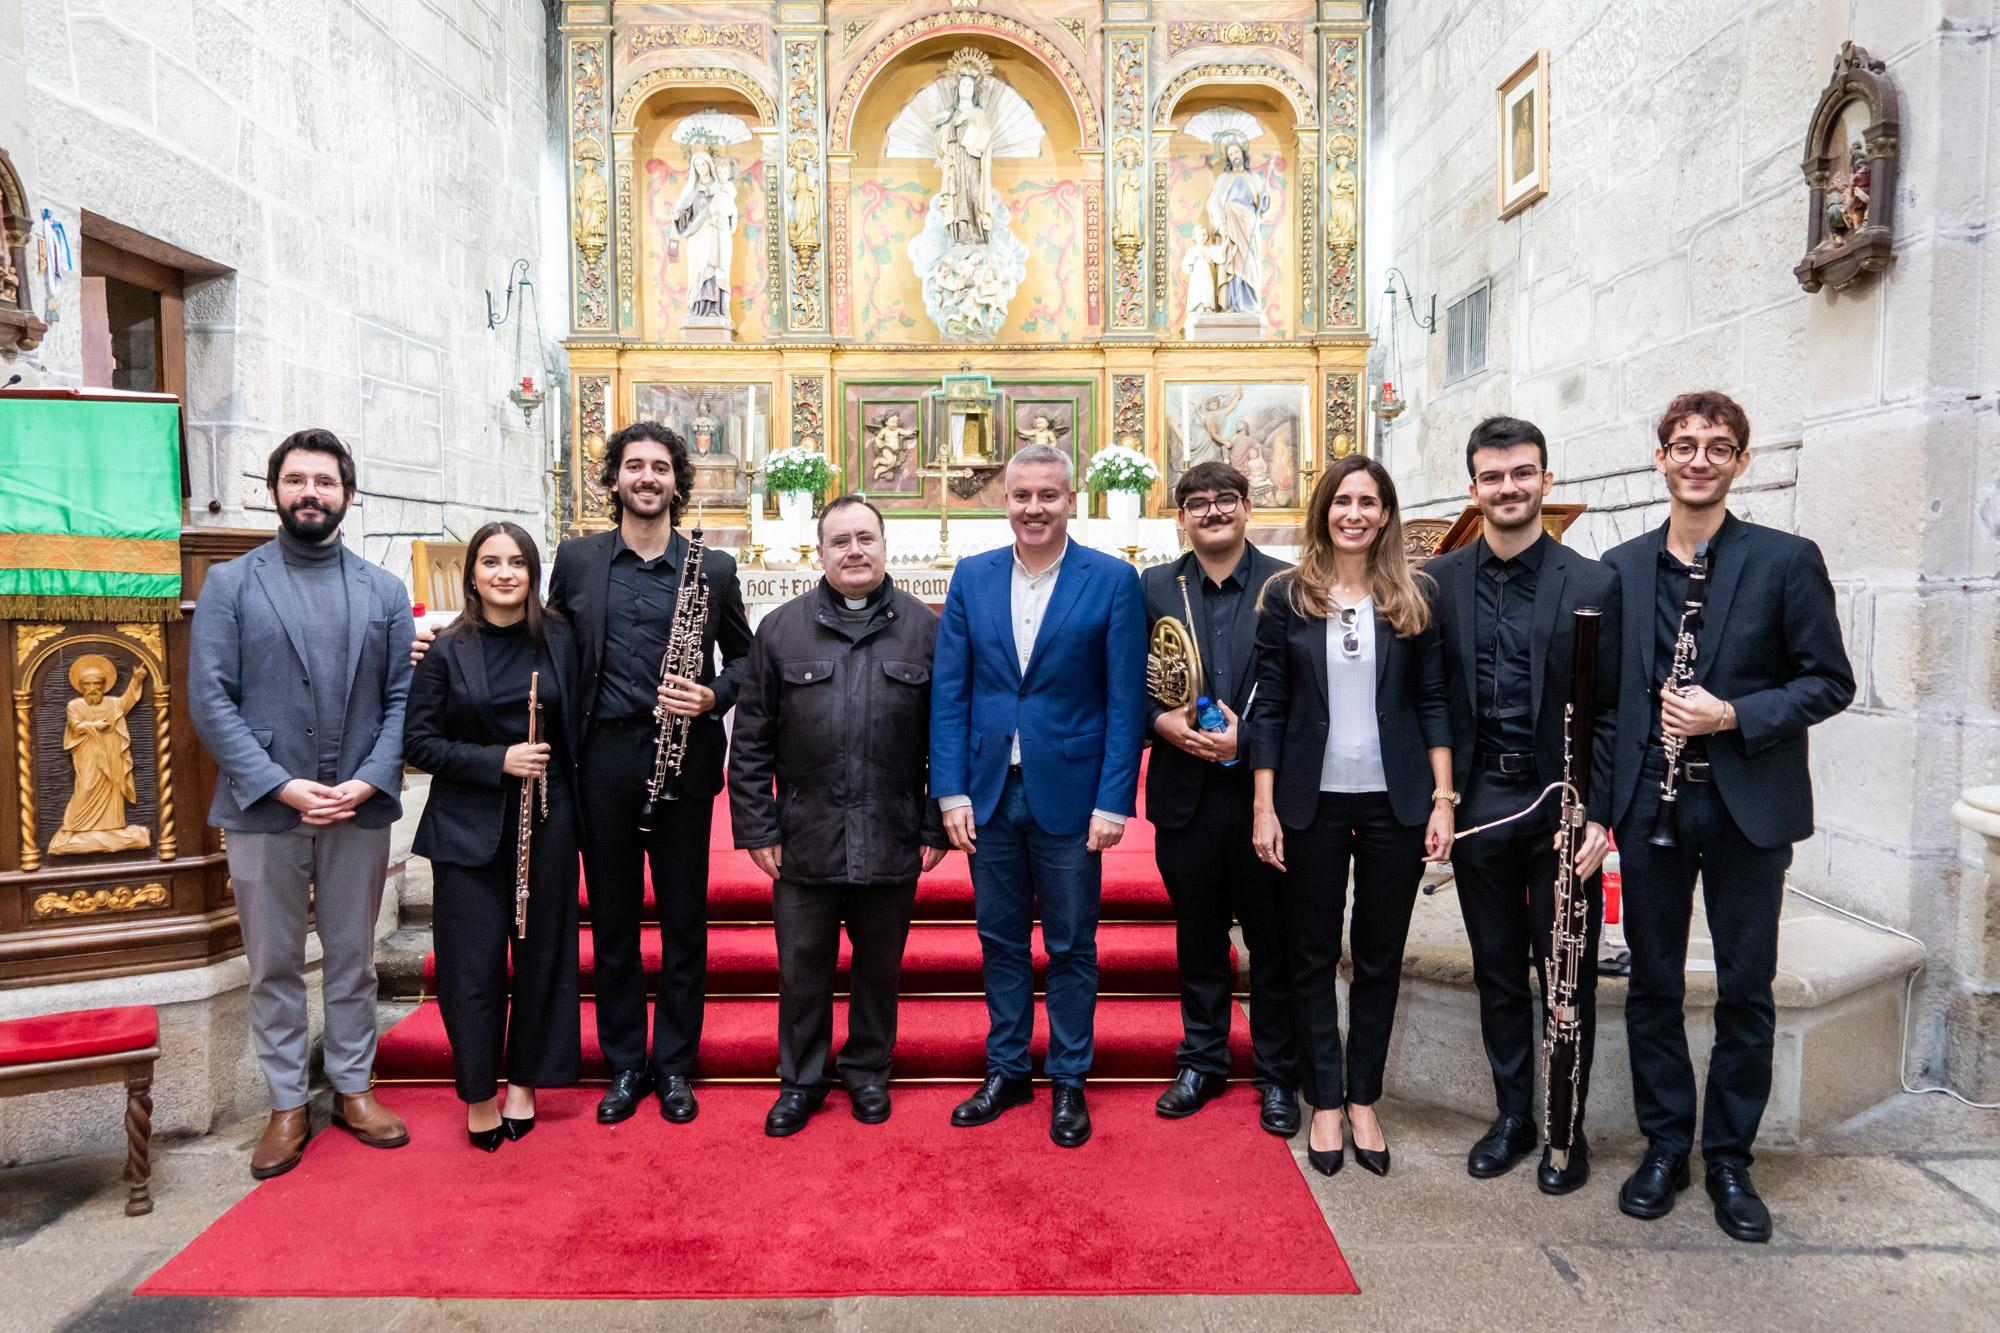 Este domingo a Igrexa Parroquial Santa Teresa da Cañiza acolleu o concerto do QUINTETO ZÉPHYROS da Escola Superior de Música Reina Sofía